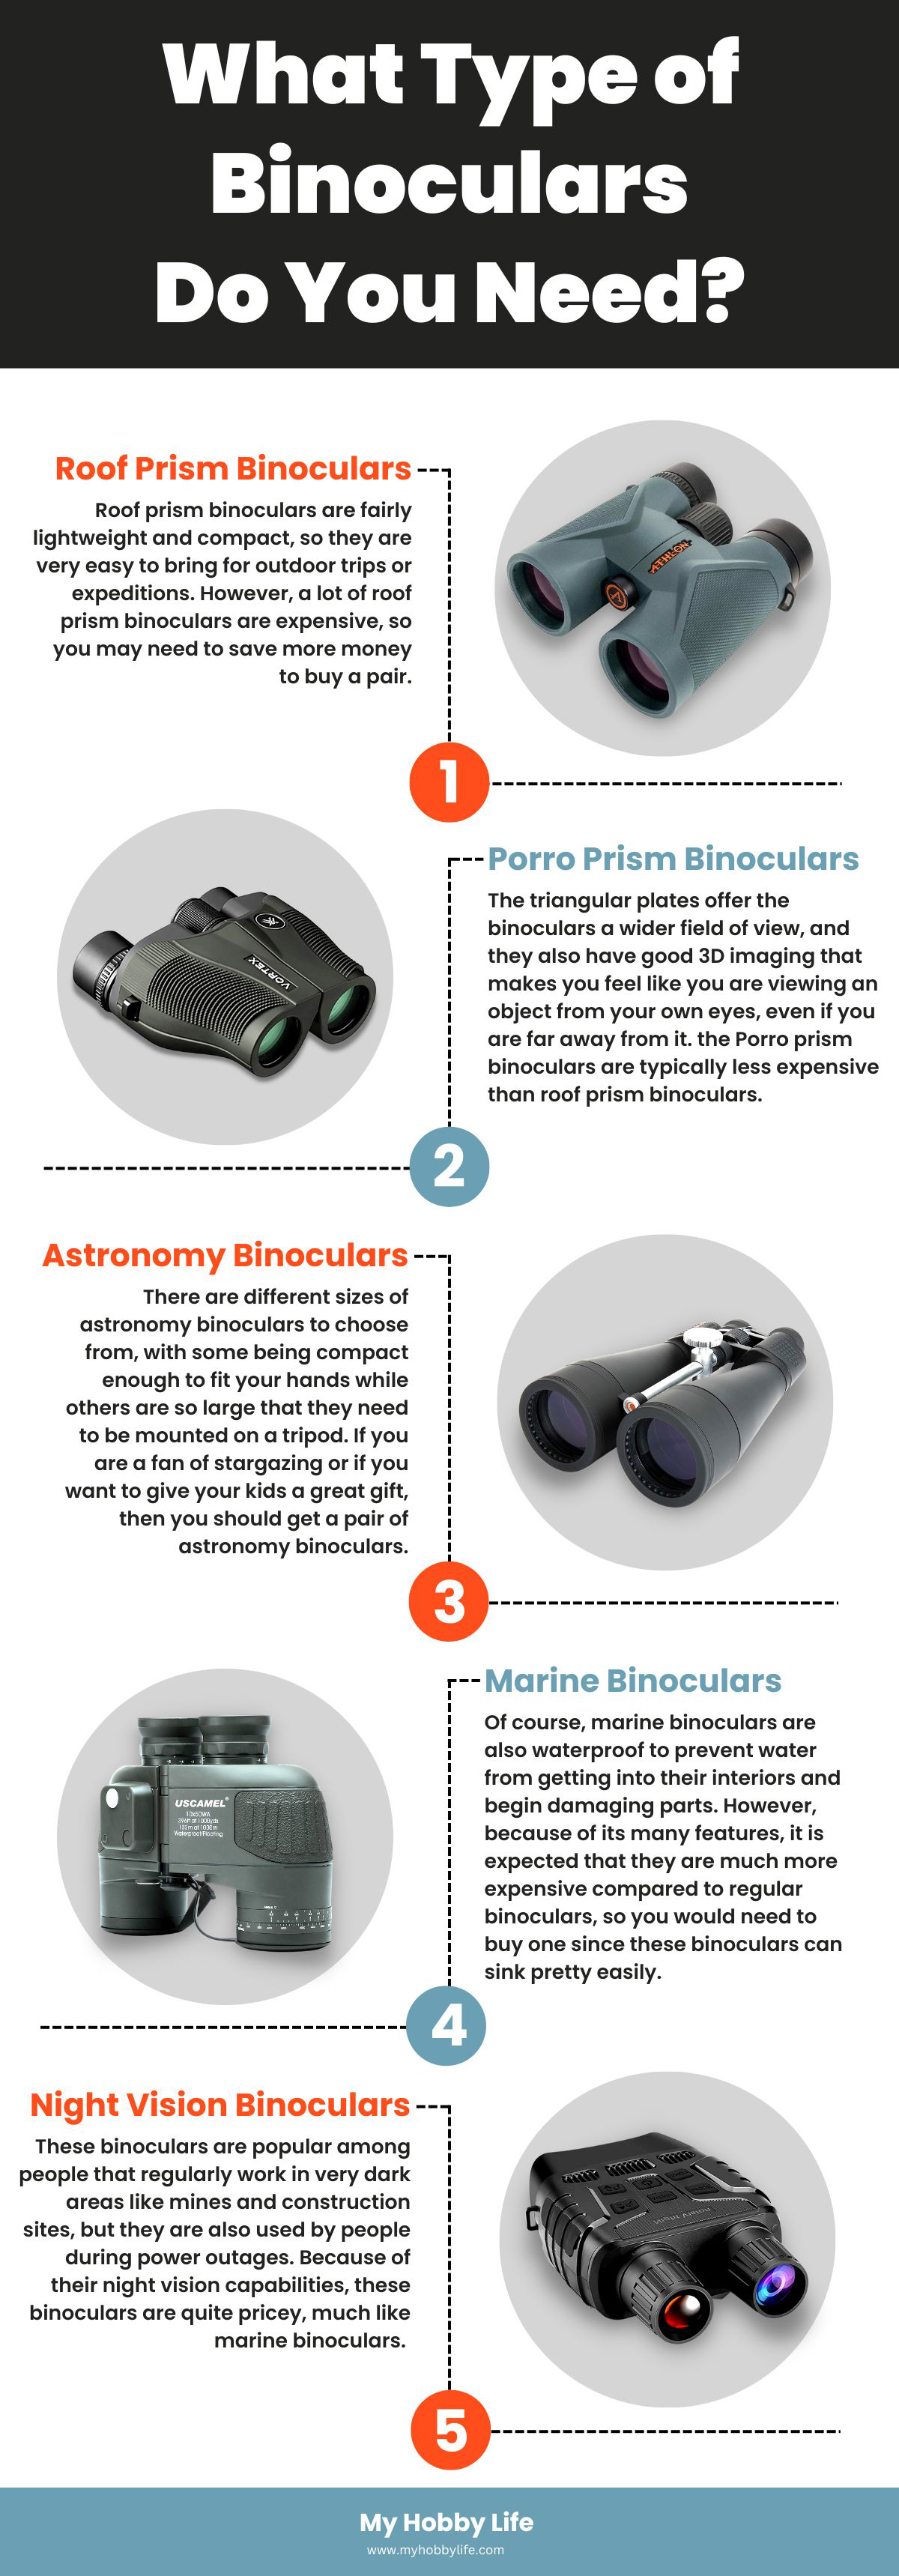 What Type of Binoculars Do You Need?